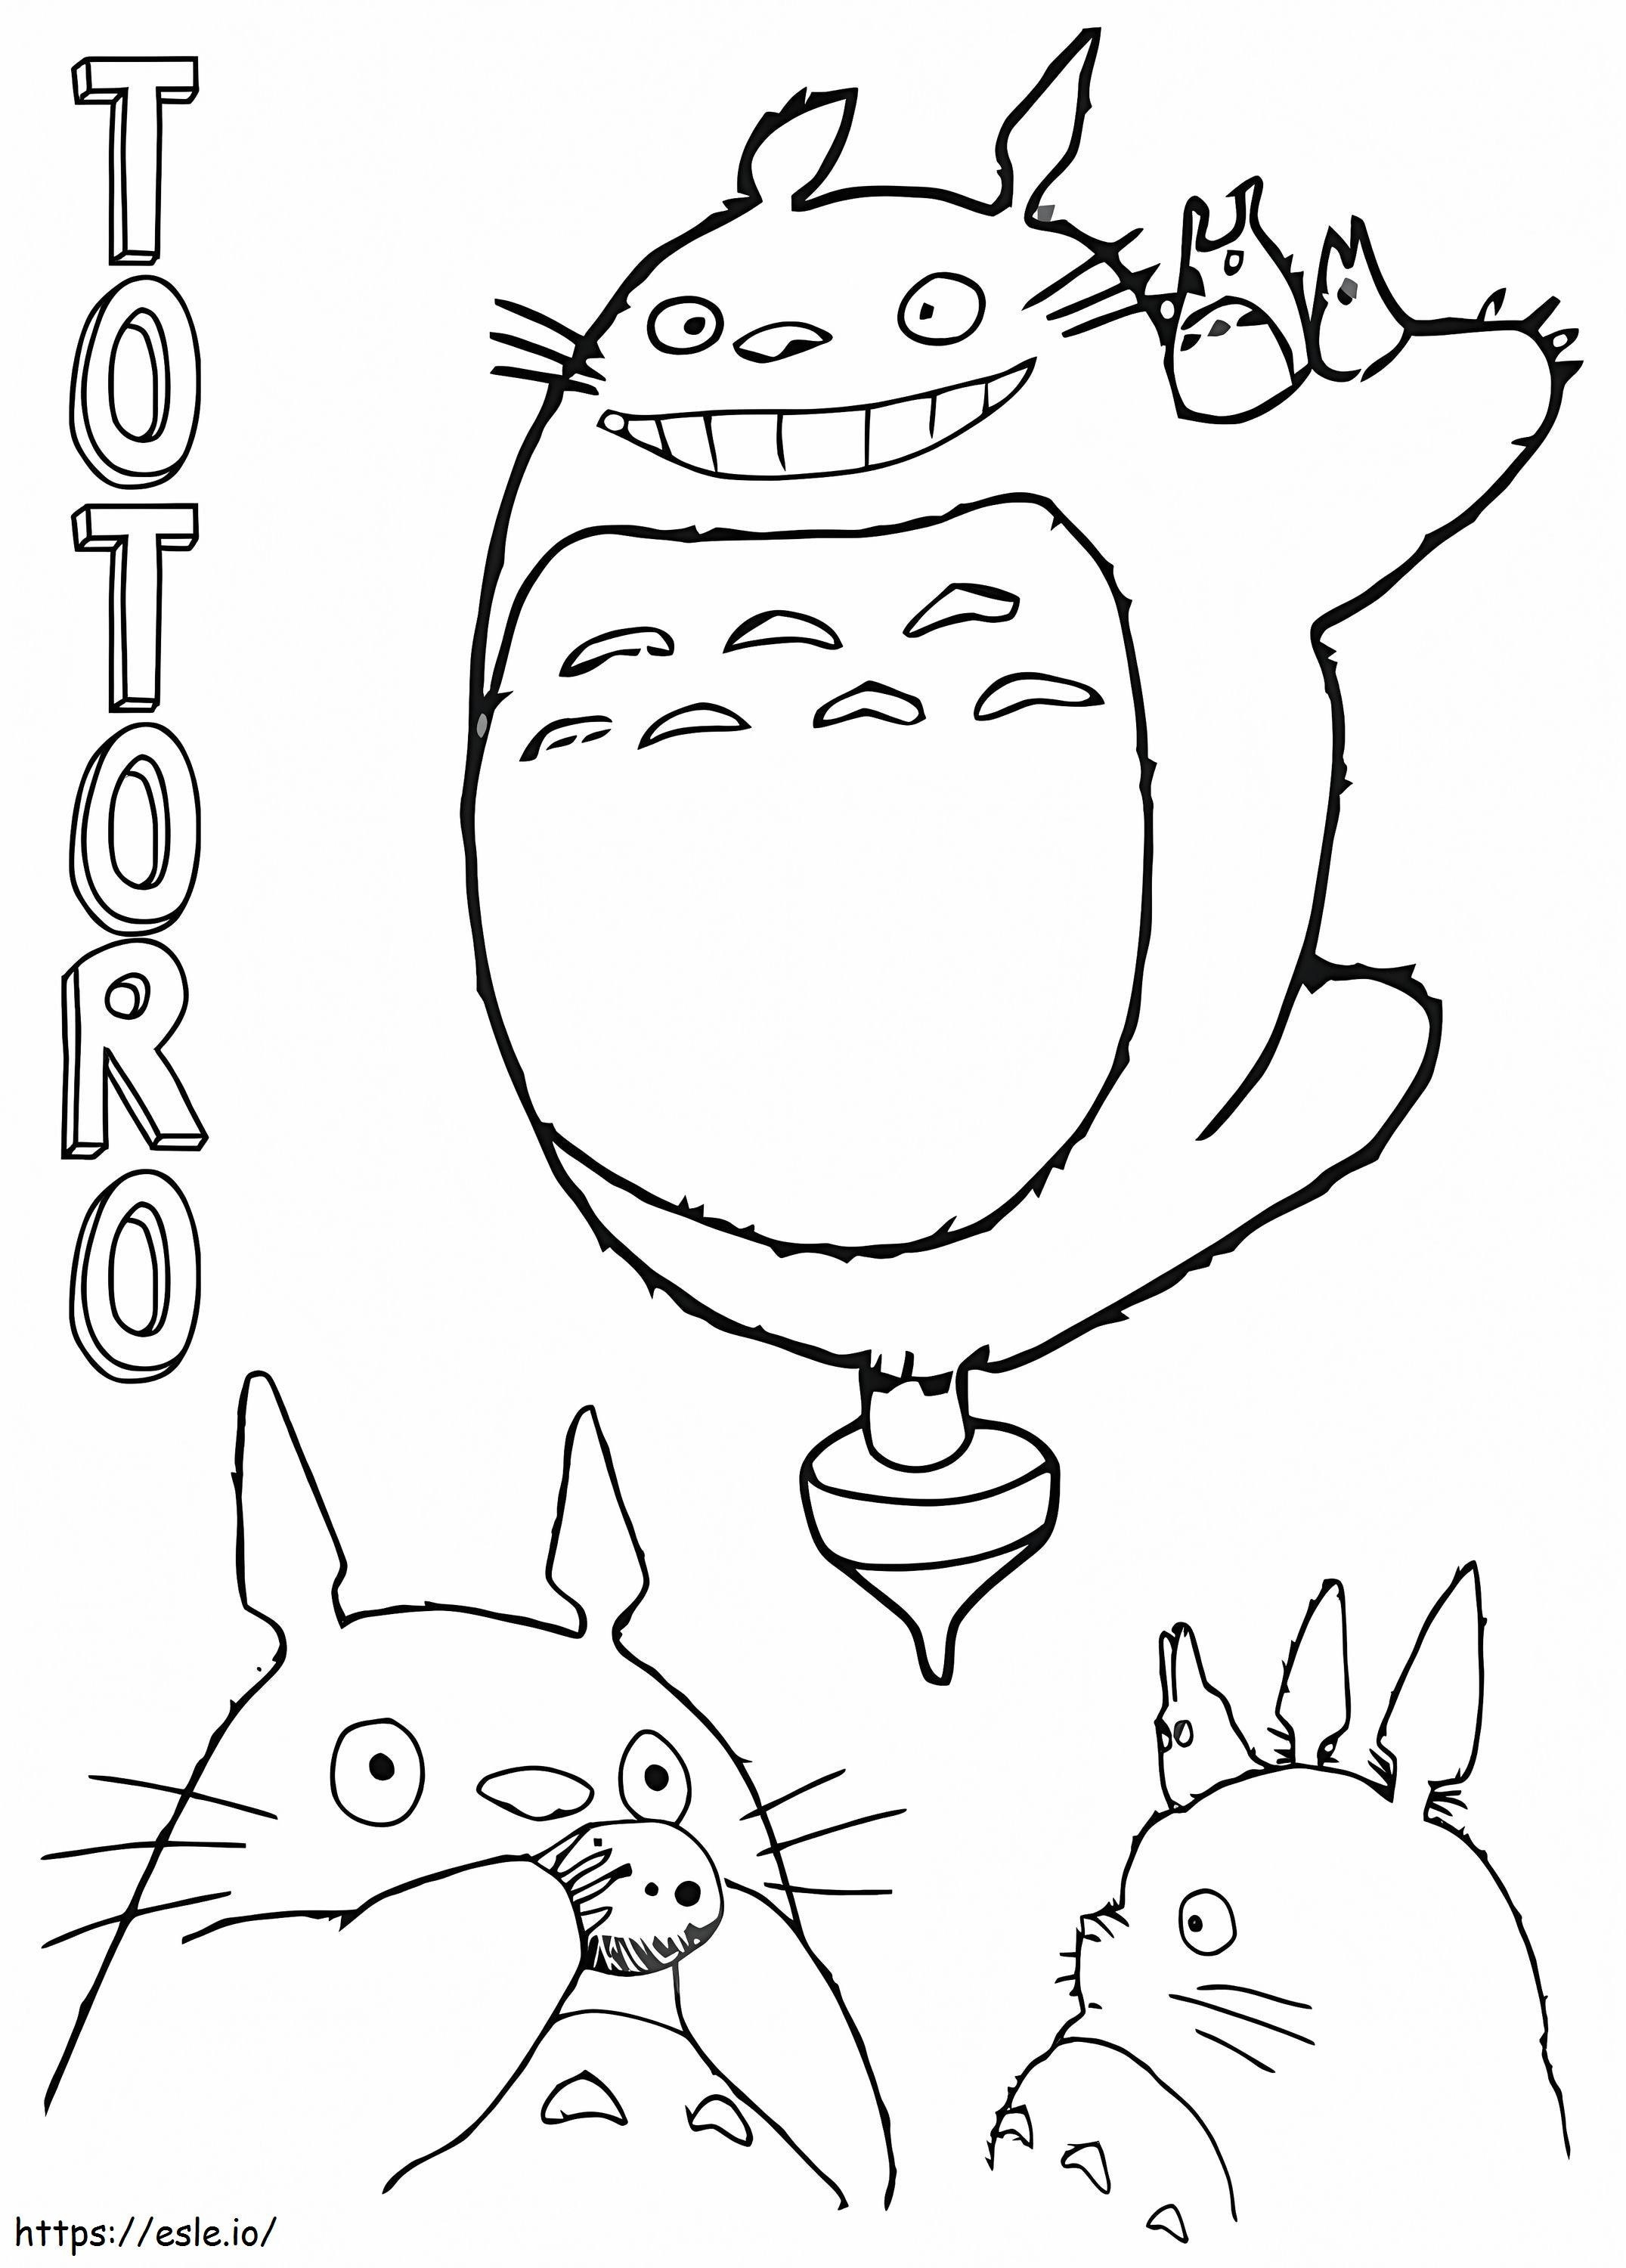 Freundlicher Totoro 1 ausmalbilder